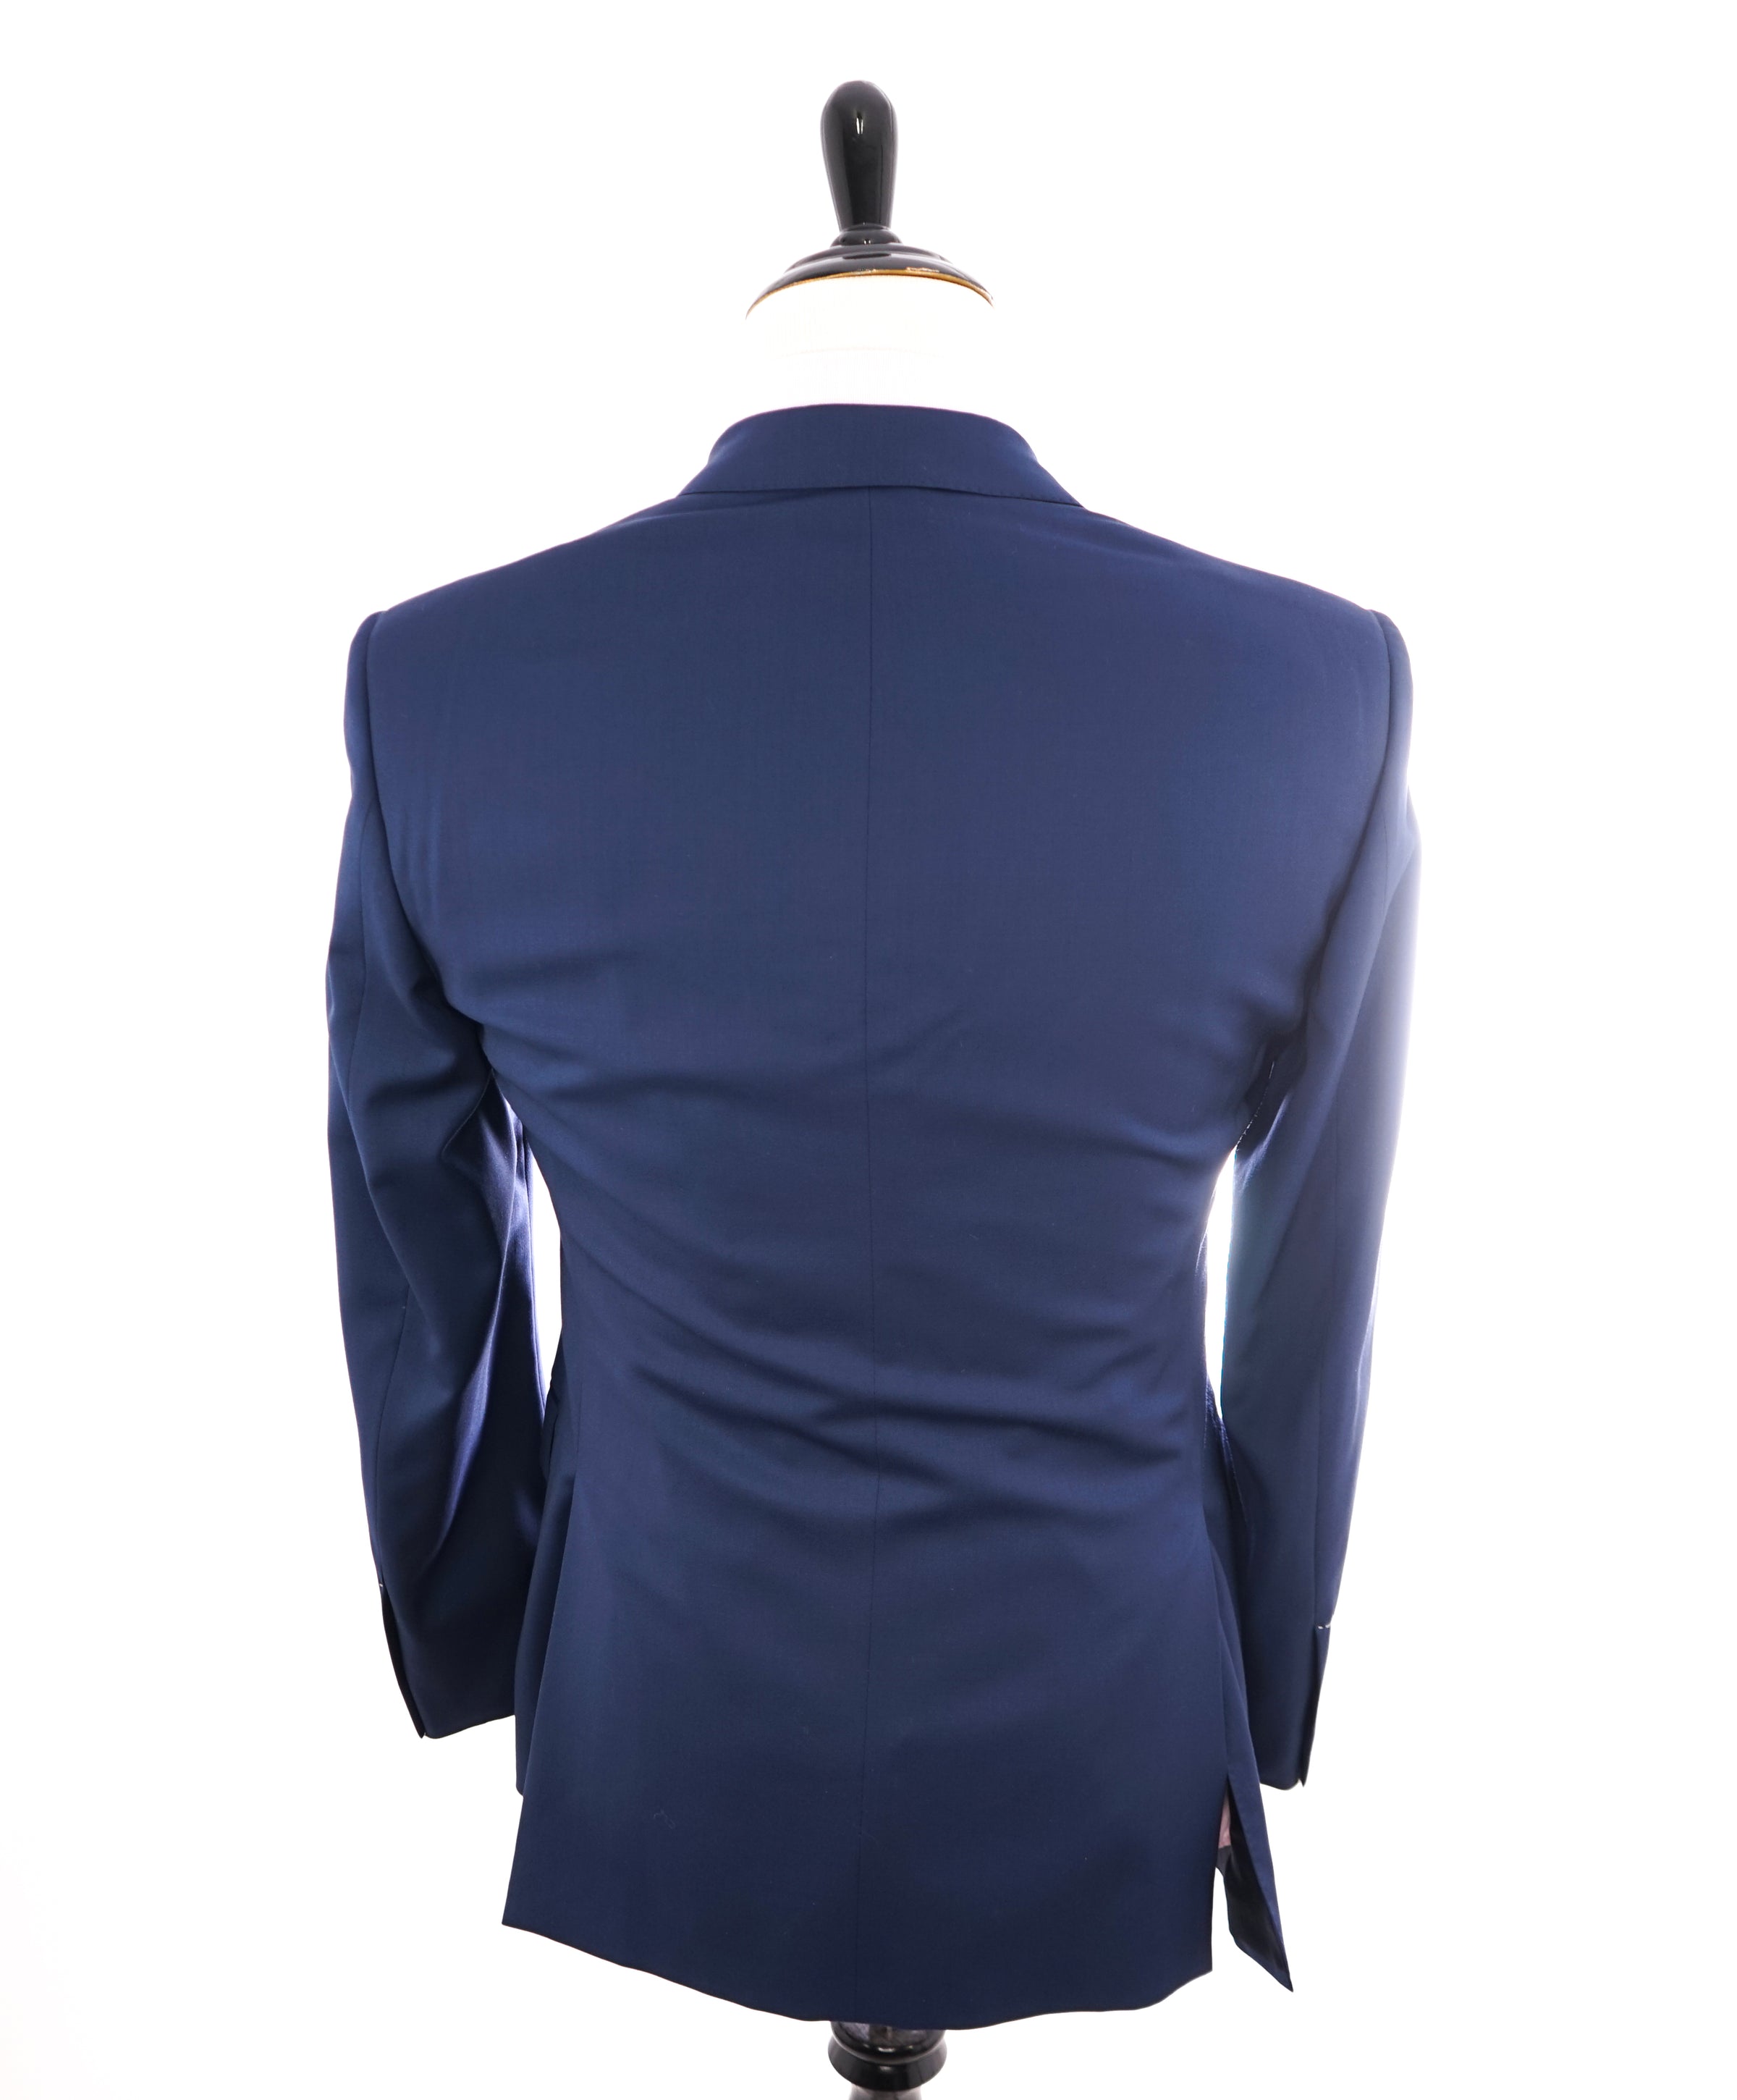 Ralph Lauren Is Officially Inter-Miami CF's Bespoke Suit Partner